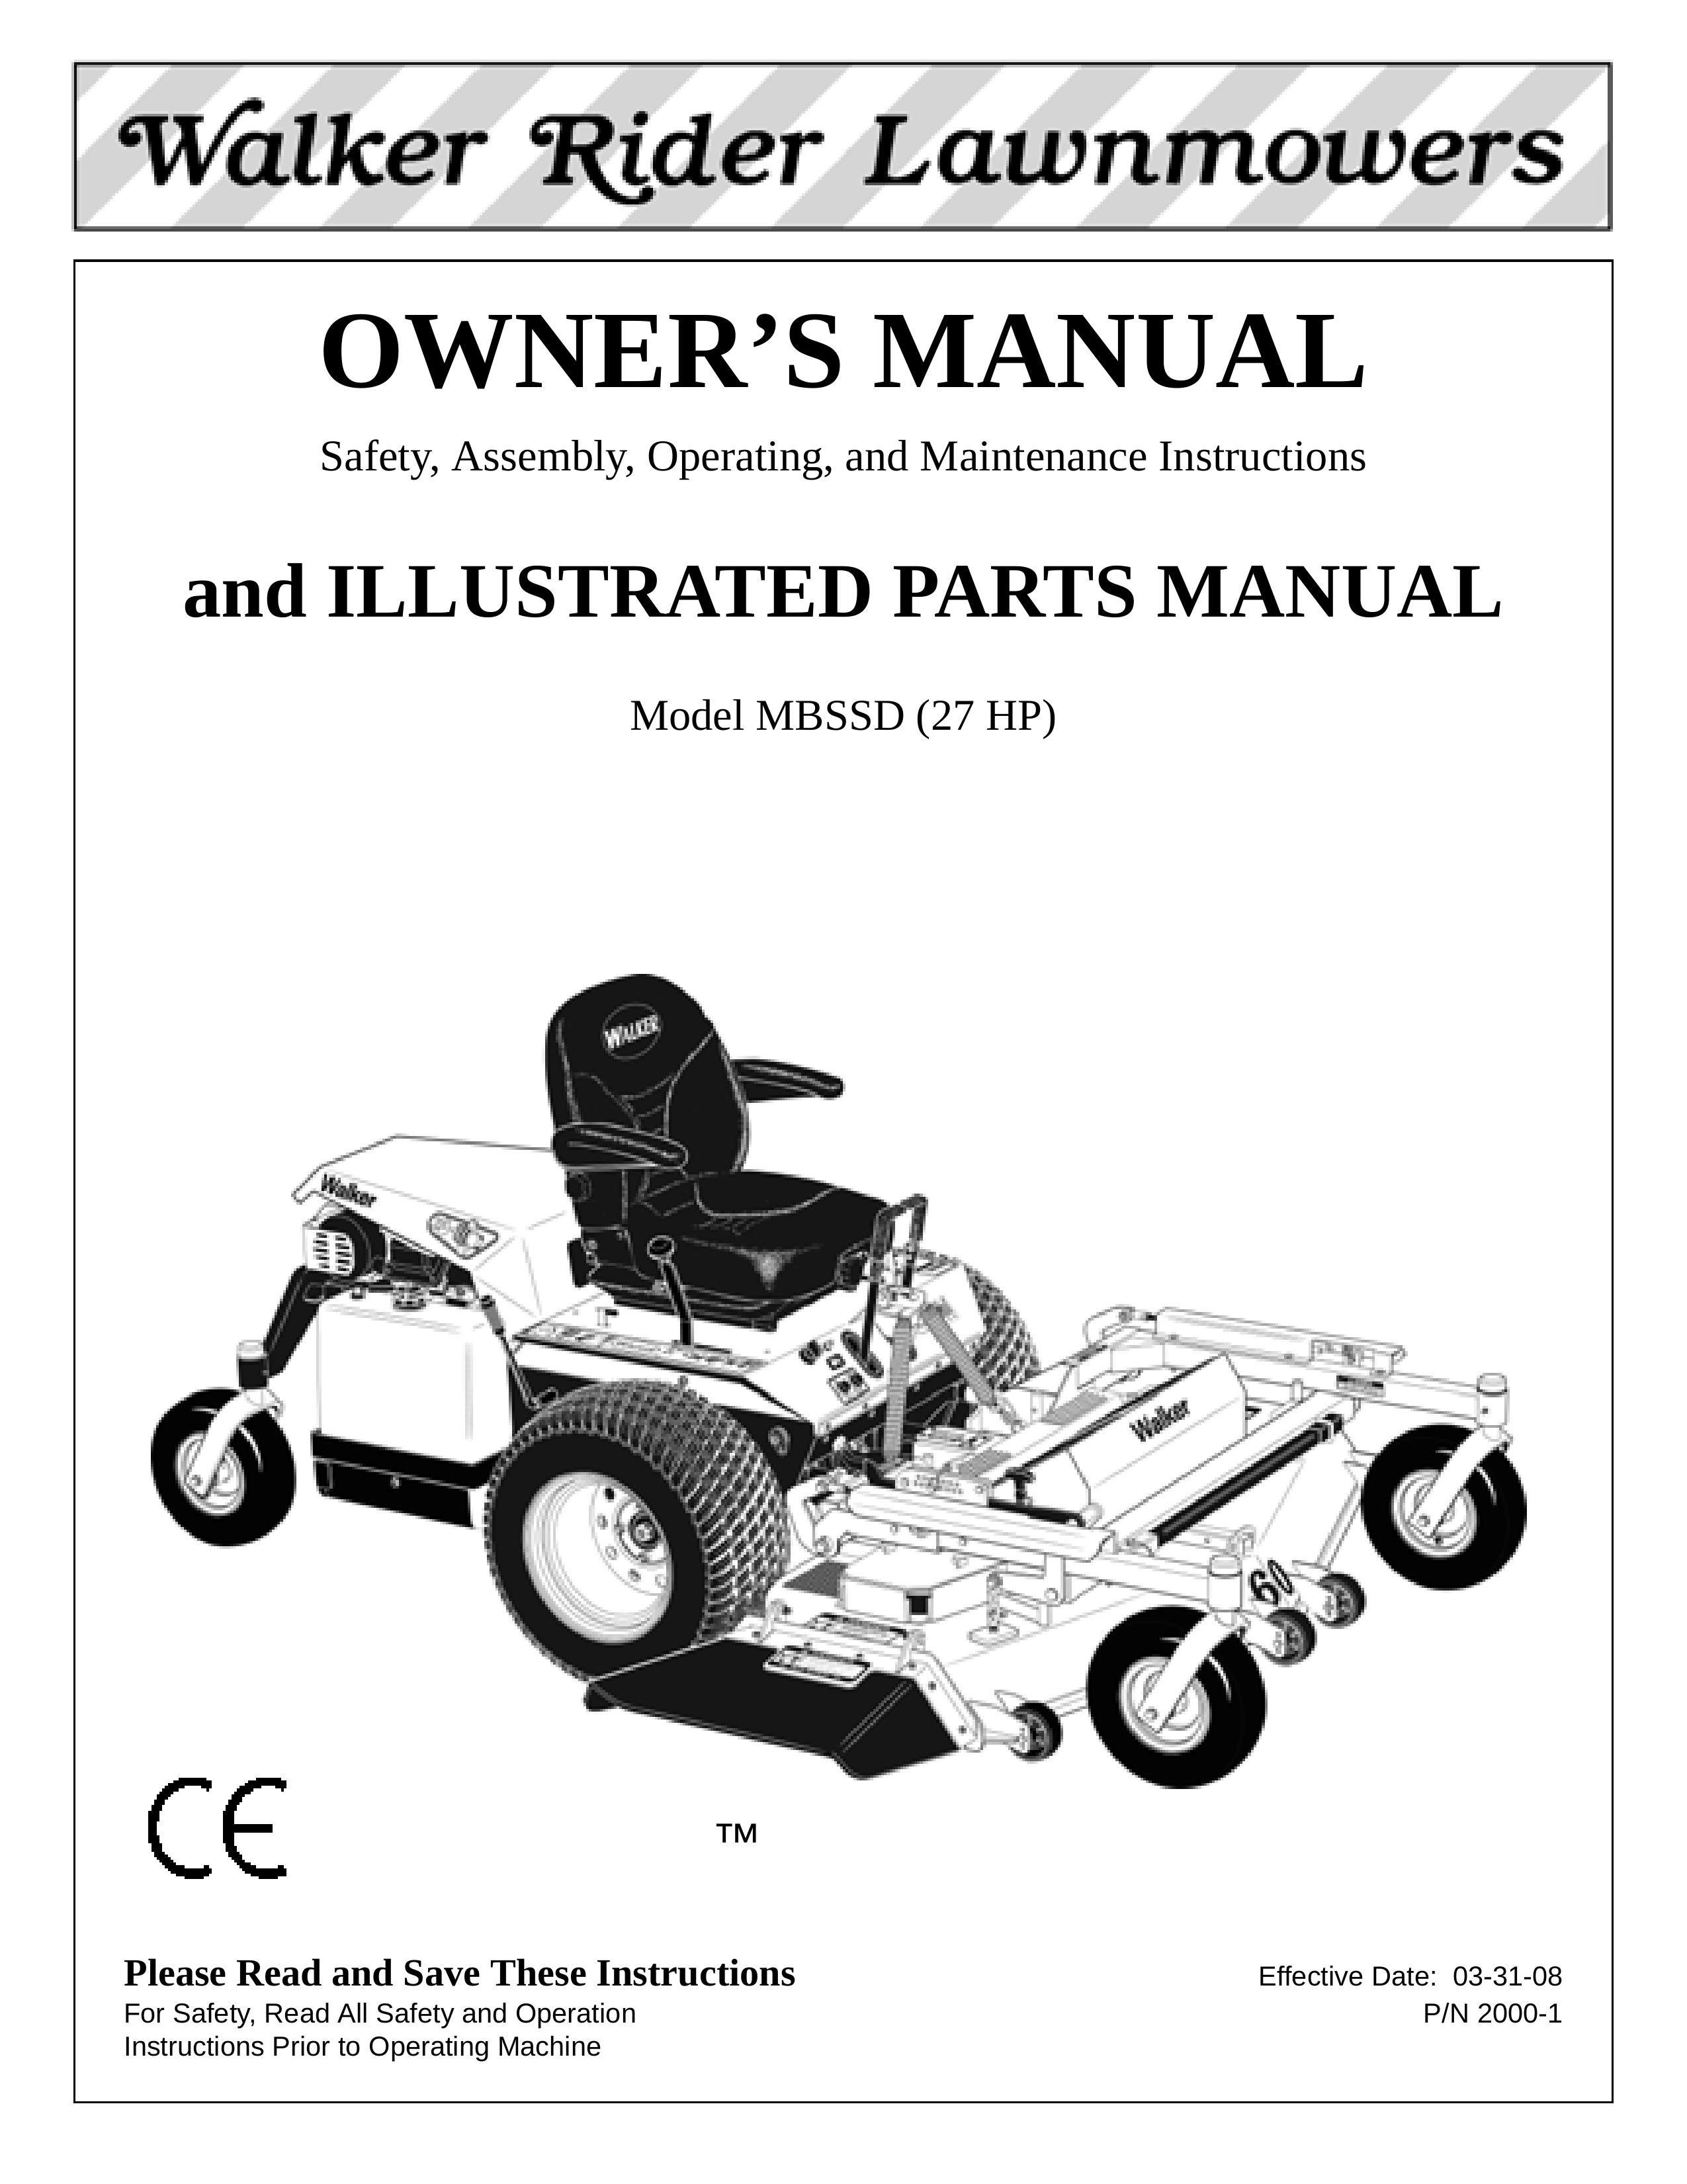 Walker MBSSD Lawn Mower User Manual